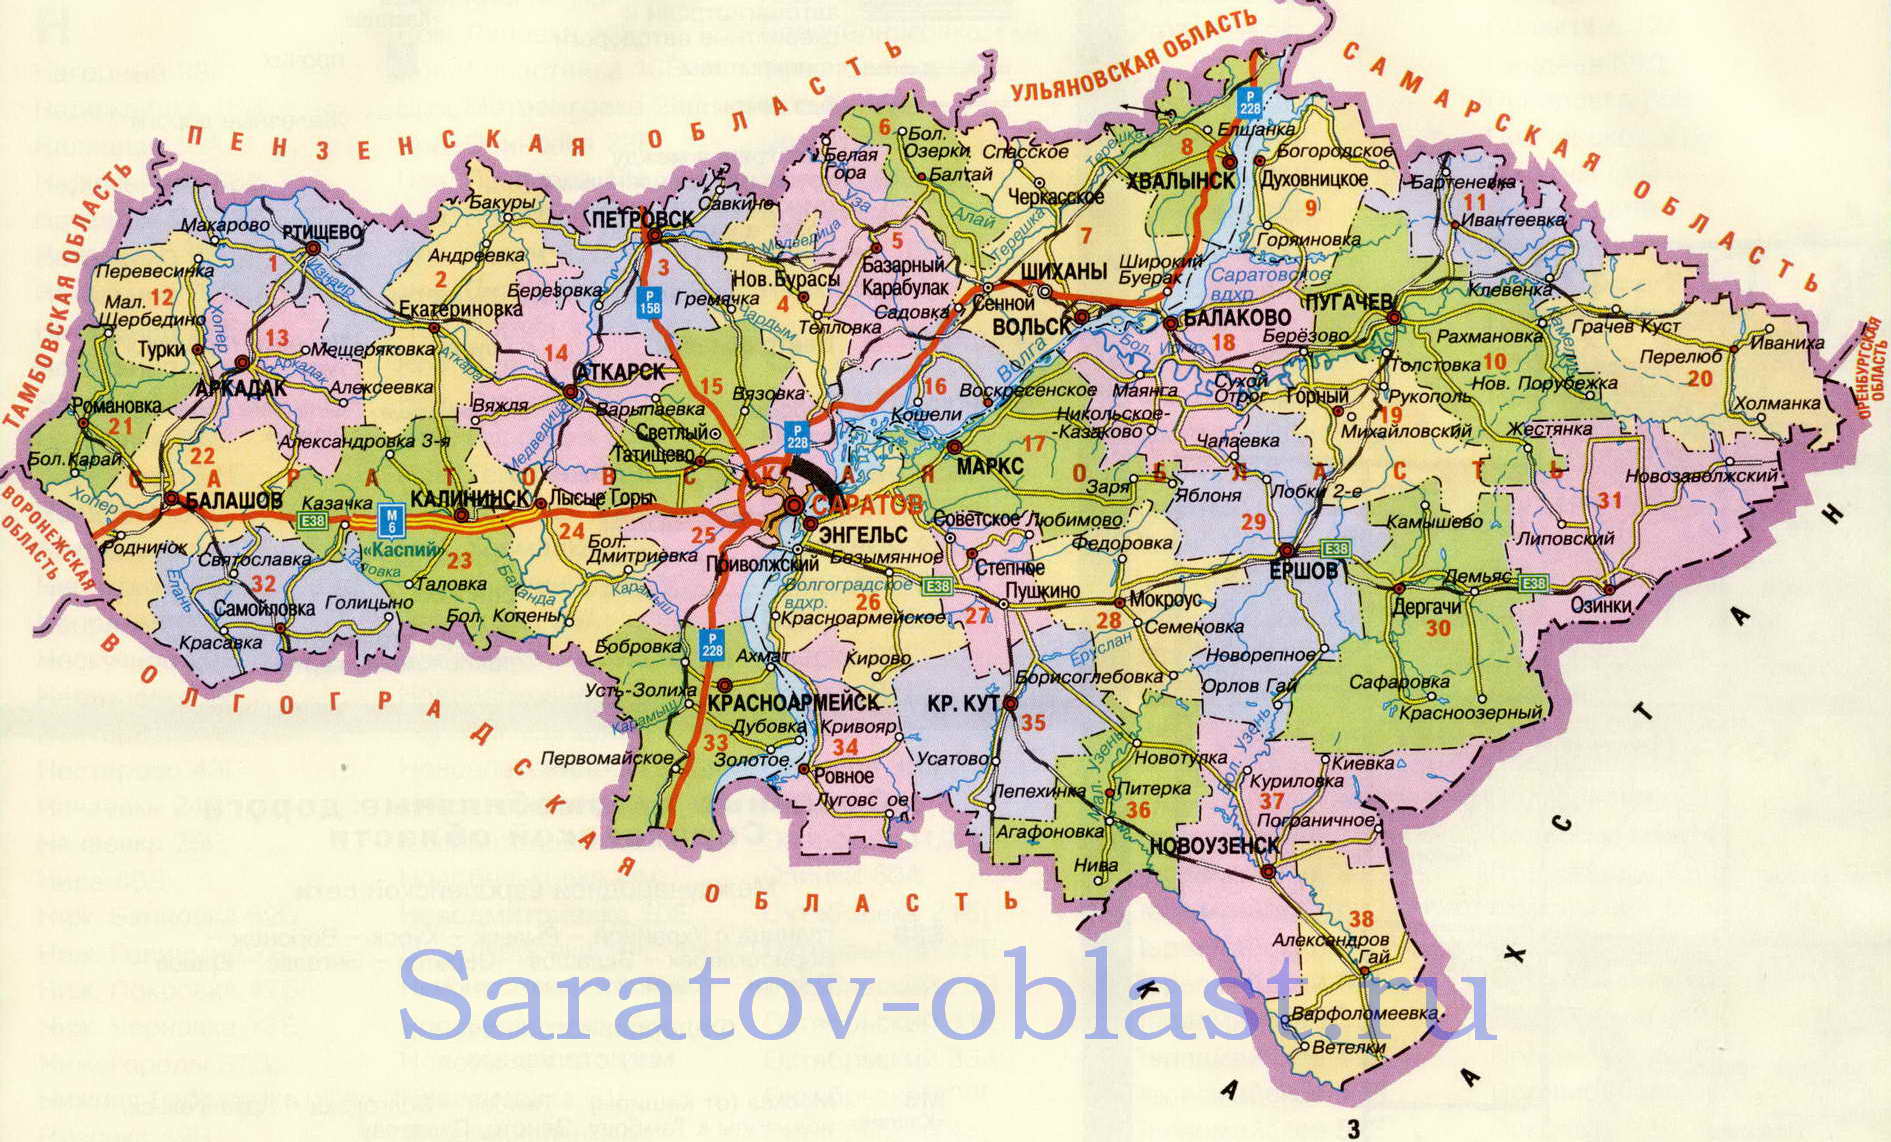  Карта Саратовской области. Подробная карта Саратовской области с городами и дорогами, A0 - 